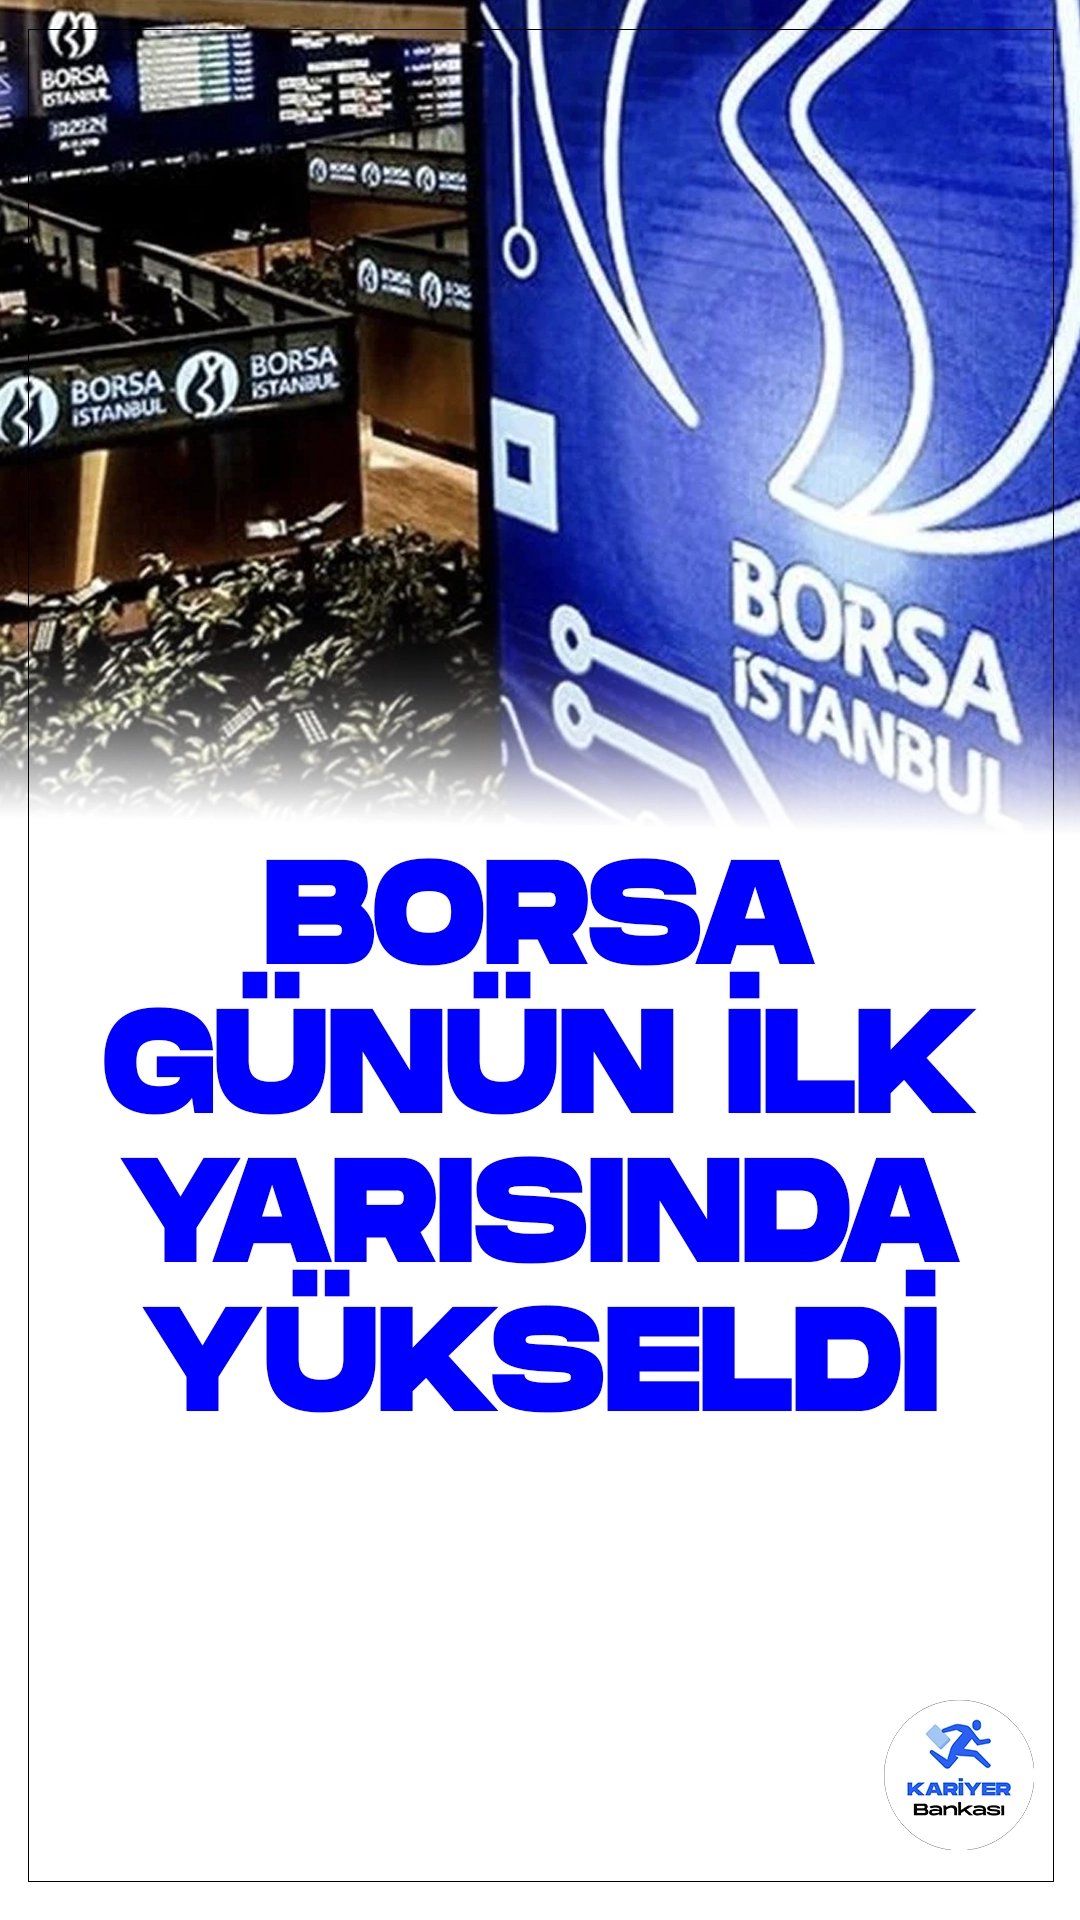 Borsa İstanbul'da Günün İlk Yarısında Yükseliş.Borsa İstanbul'da işlem gören BIST 100 endeksi, günün ilk yarısında yüzde 0,12 oranında değer kazanarak 9.091,13 puana yükseldi.